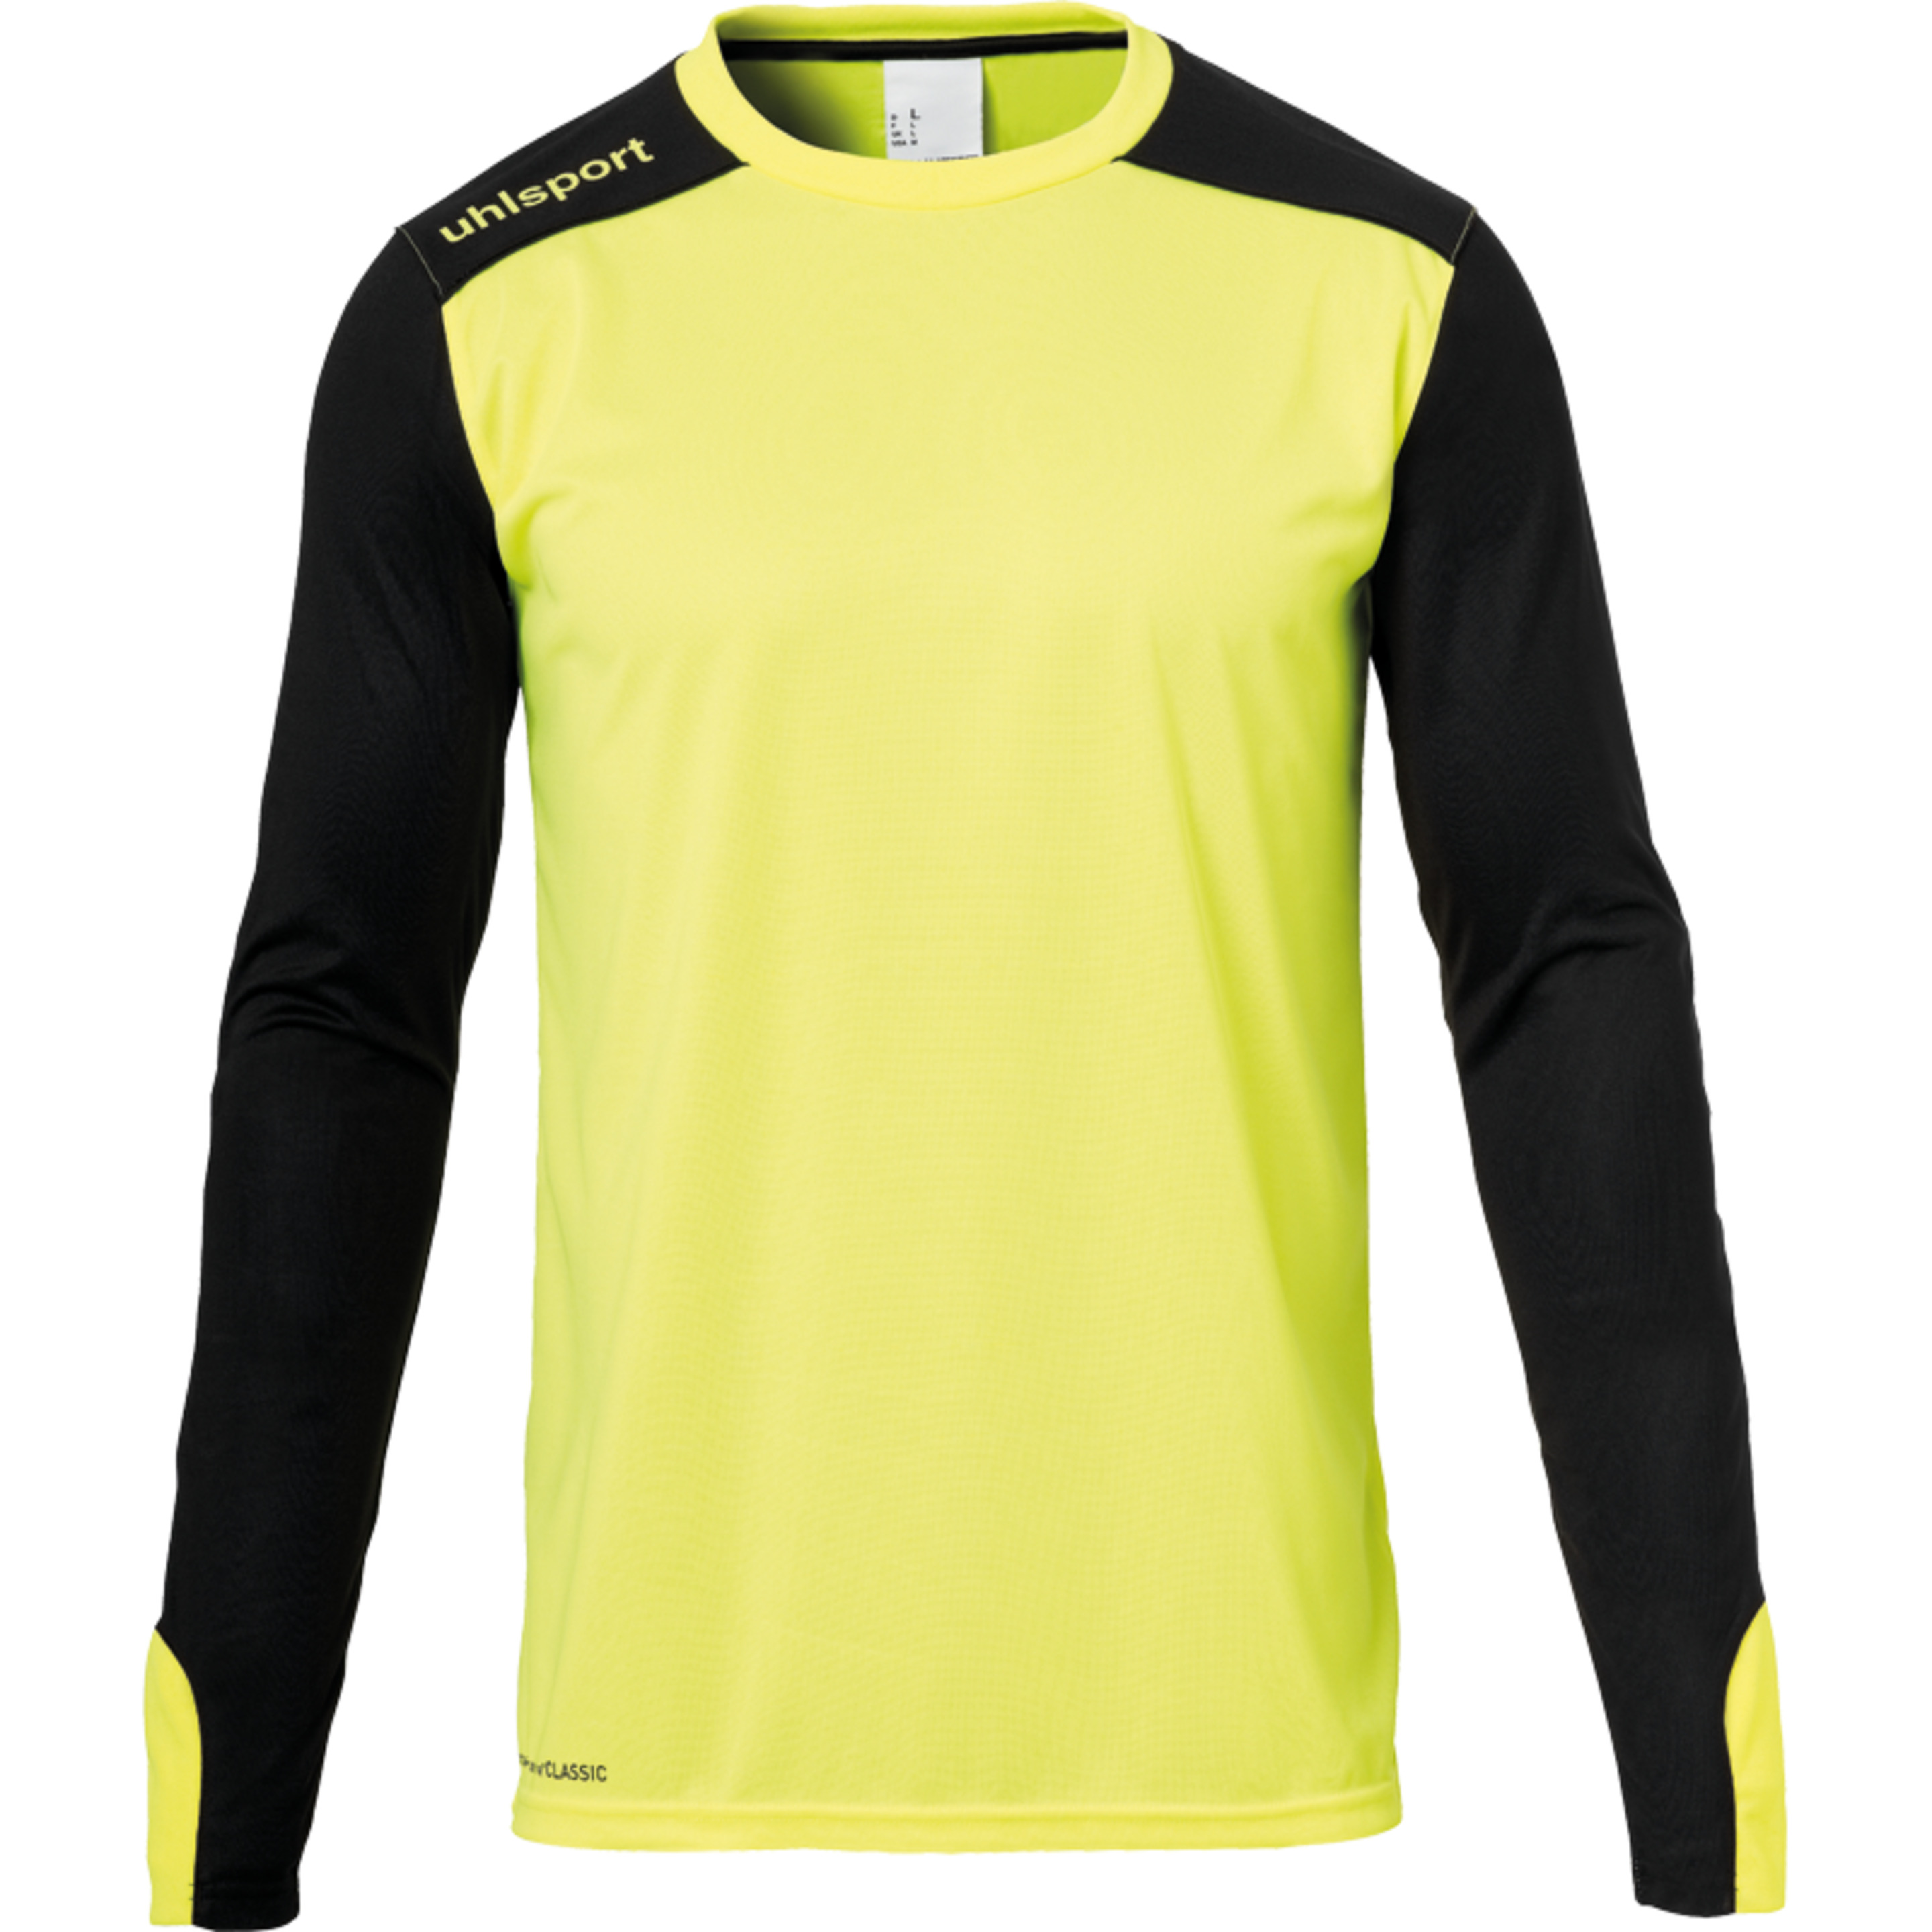 Tower Goalkeeper Shirt Ls Fluo Gelb/schwarz Uhlsport - amarillo - 